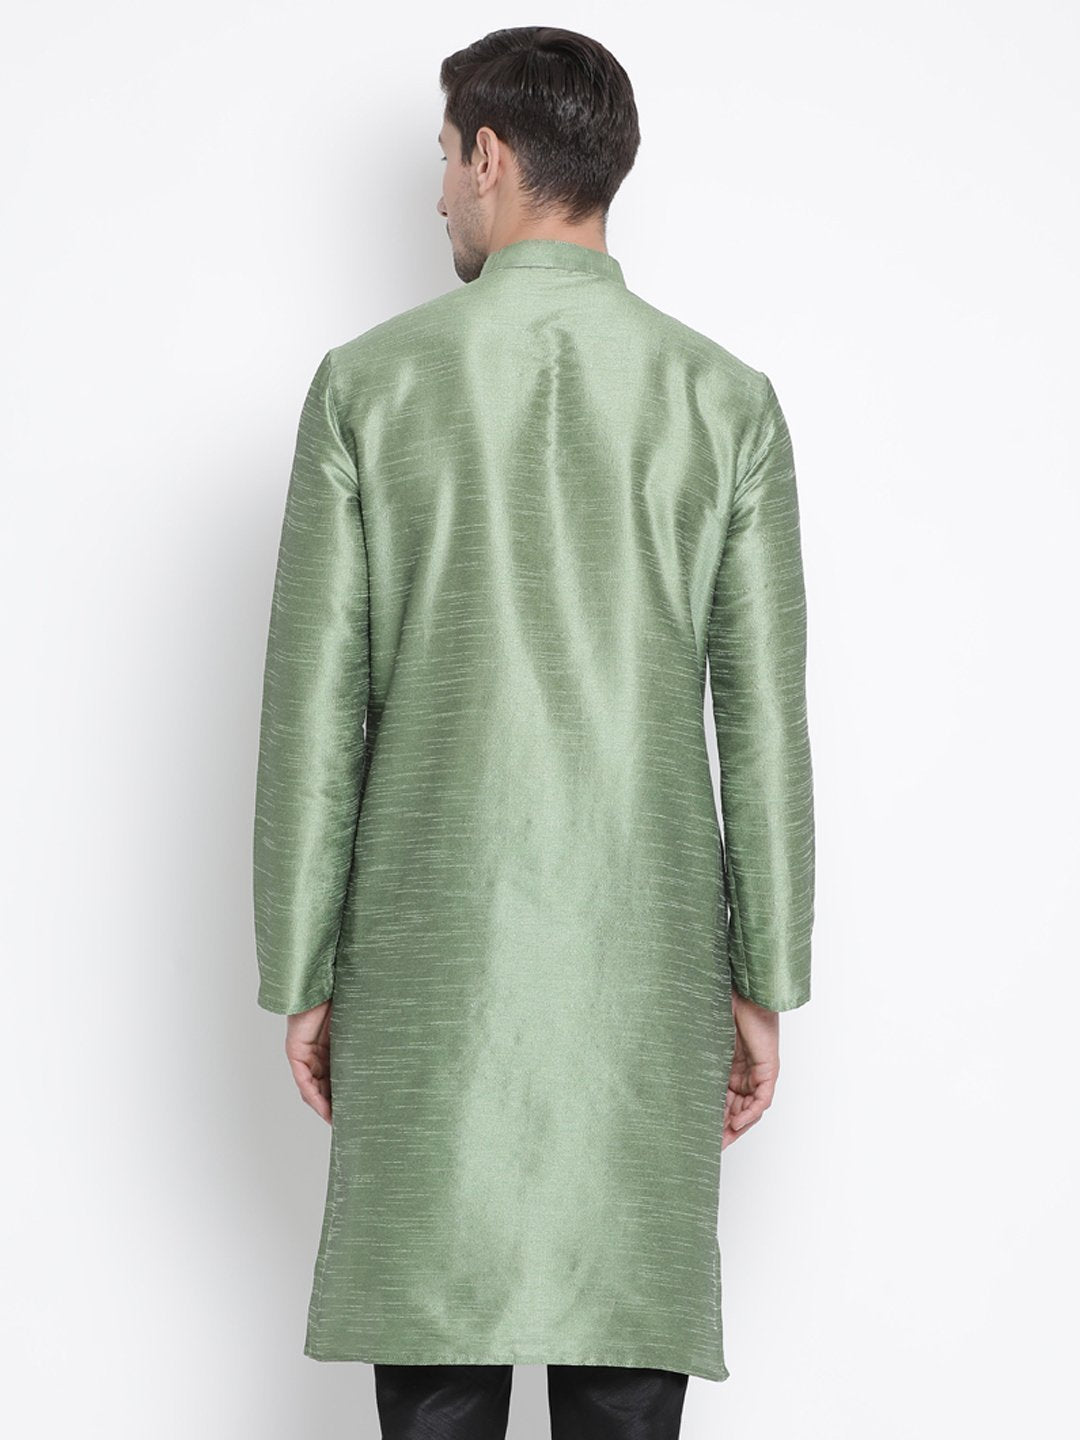 Men's Light Green Cotton Silk Blend Kurta